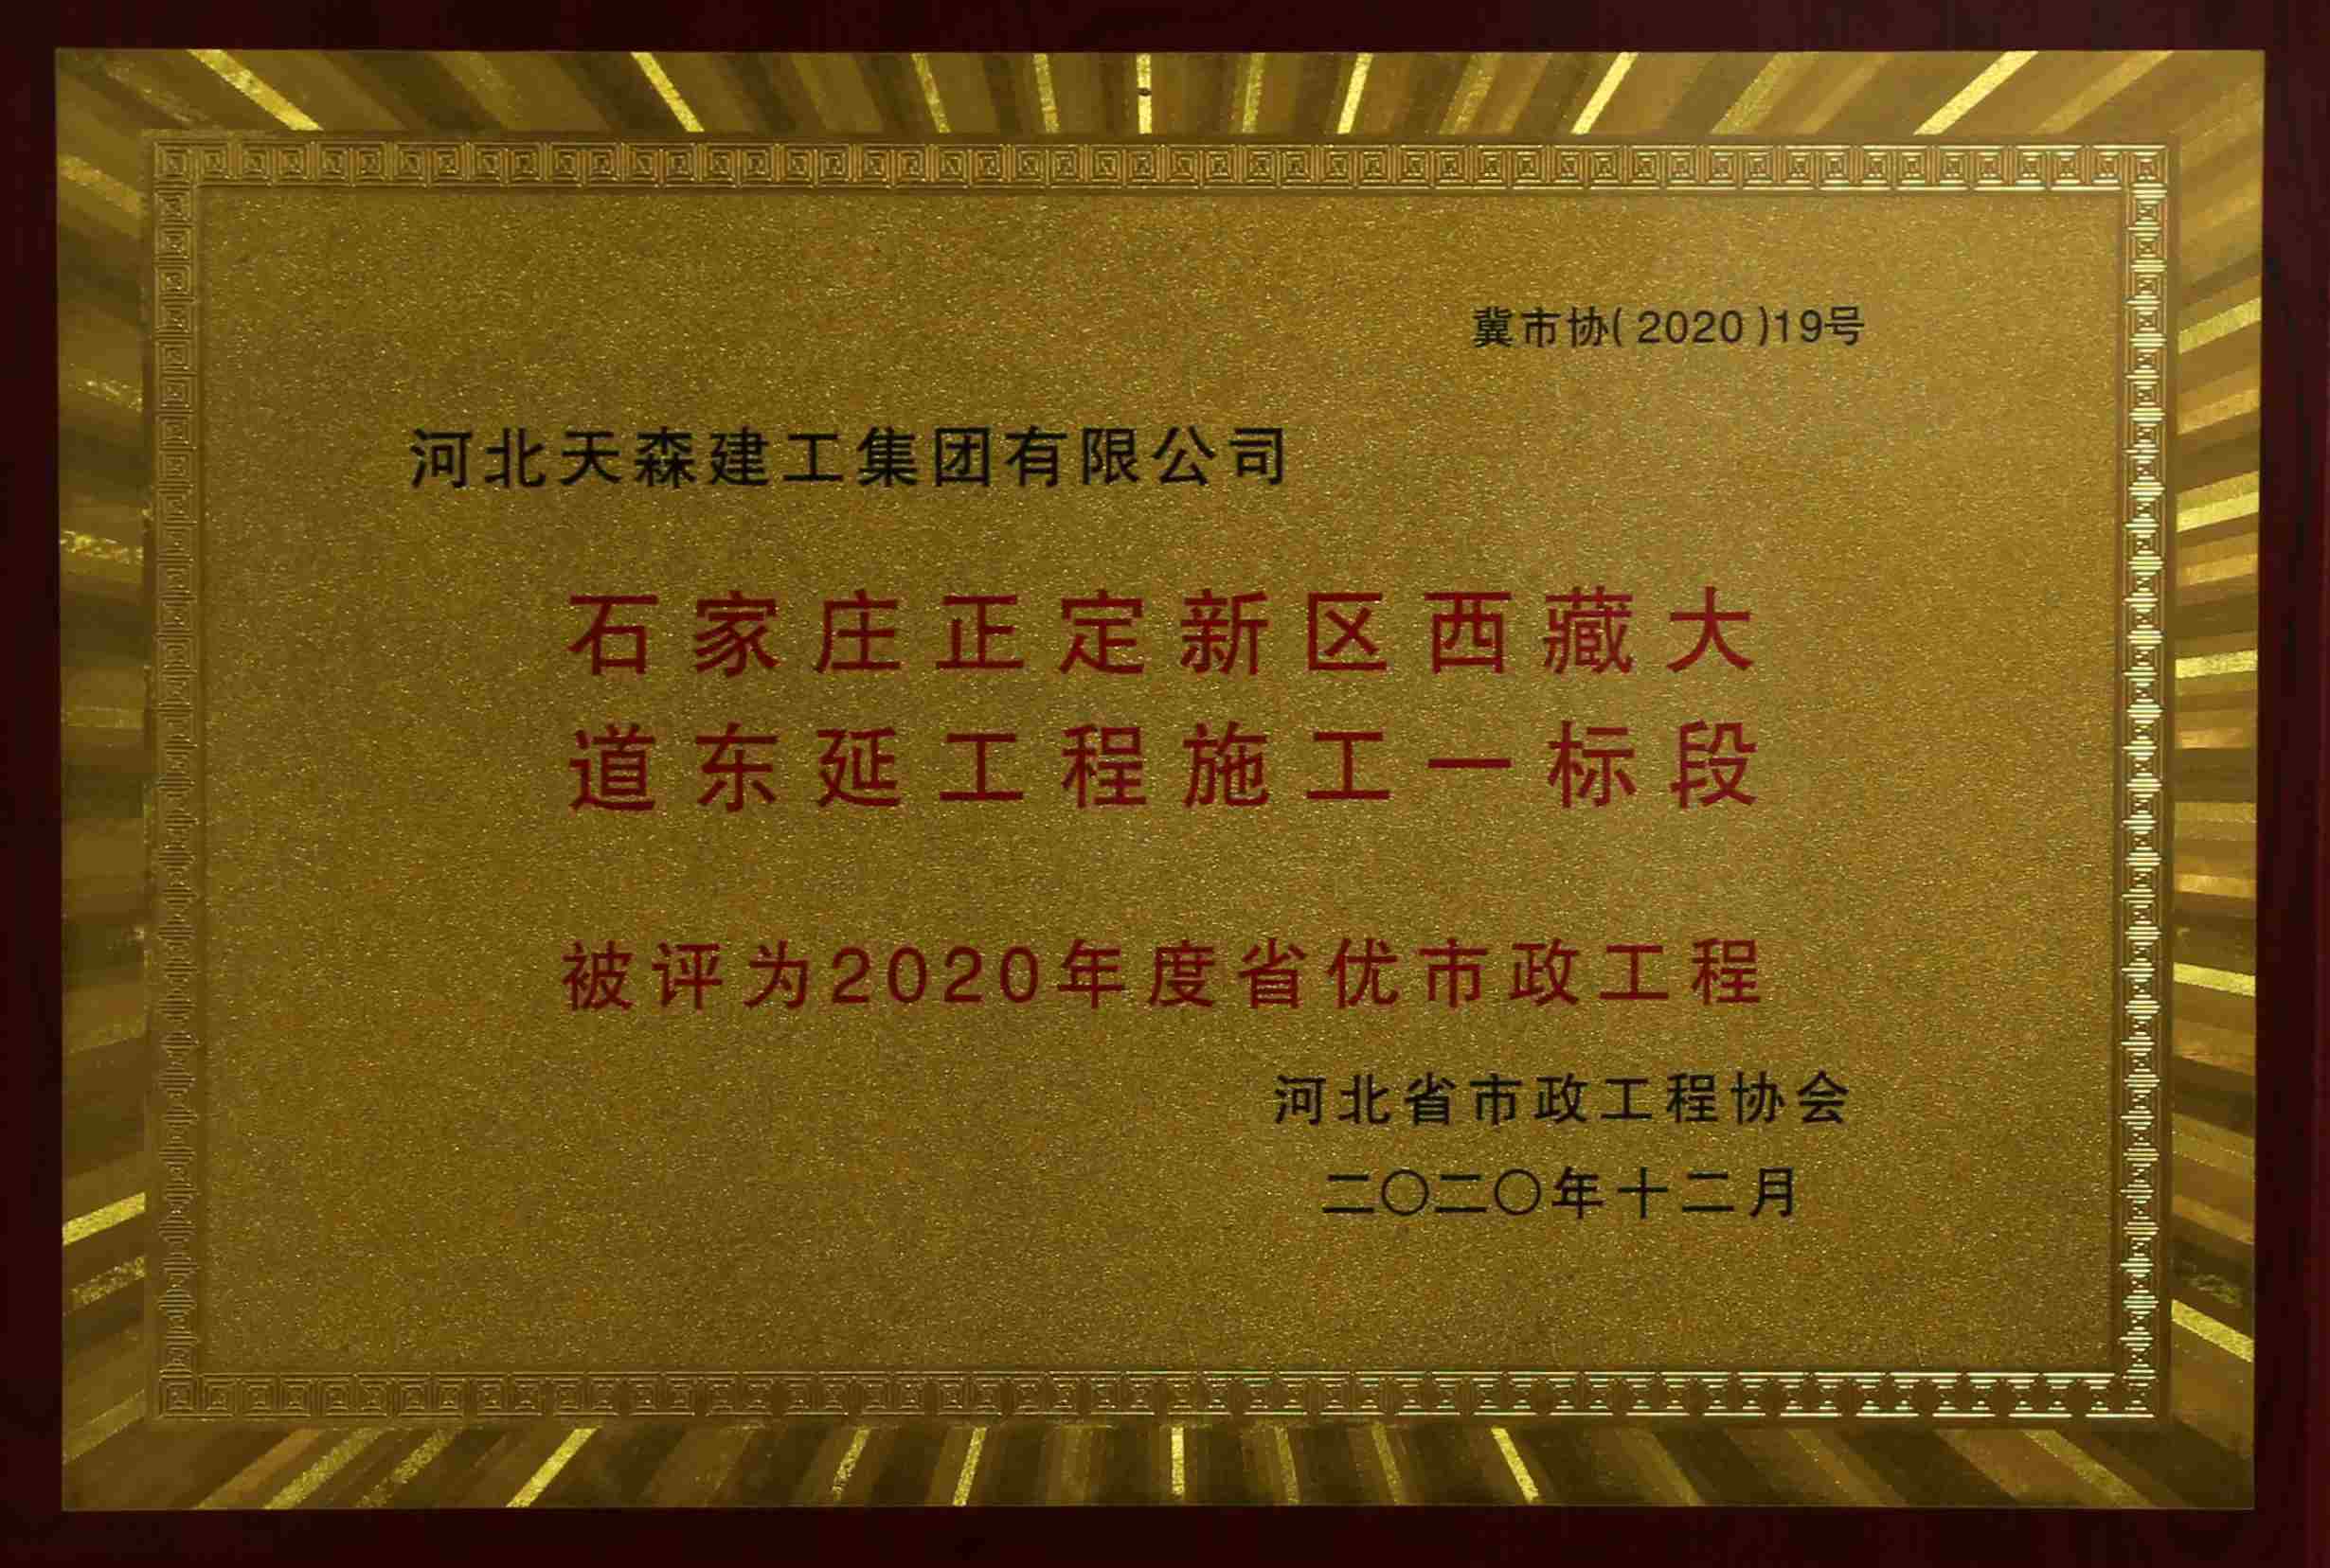 2020年度河北省优秀市政工程 石家庄正定新区西藏大道东延工程施工一标段